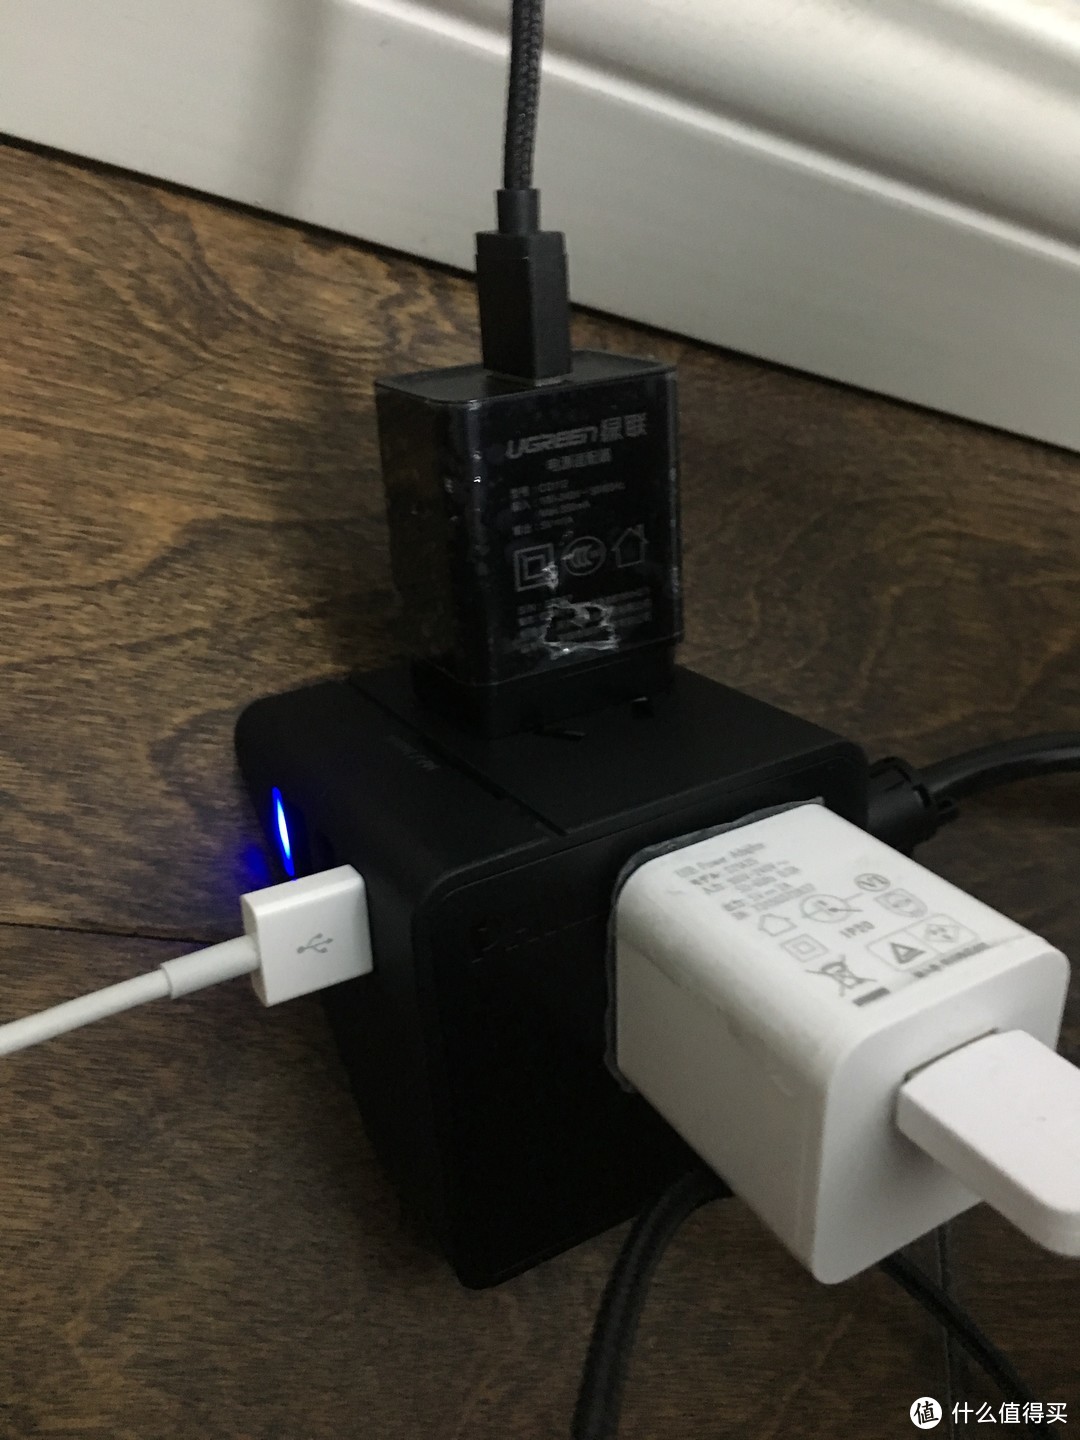 不旅行的旅行插座——飞利浦便携迷你USB桌面旅行插座轻测